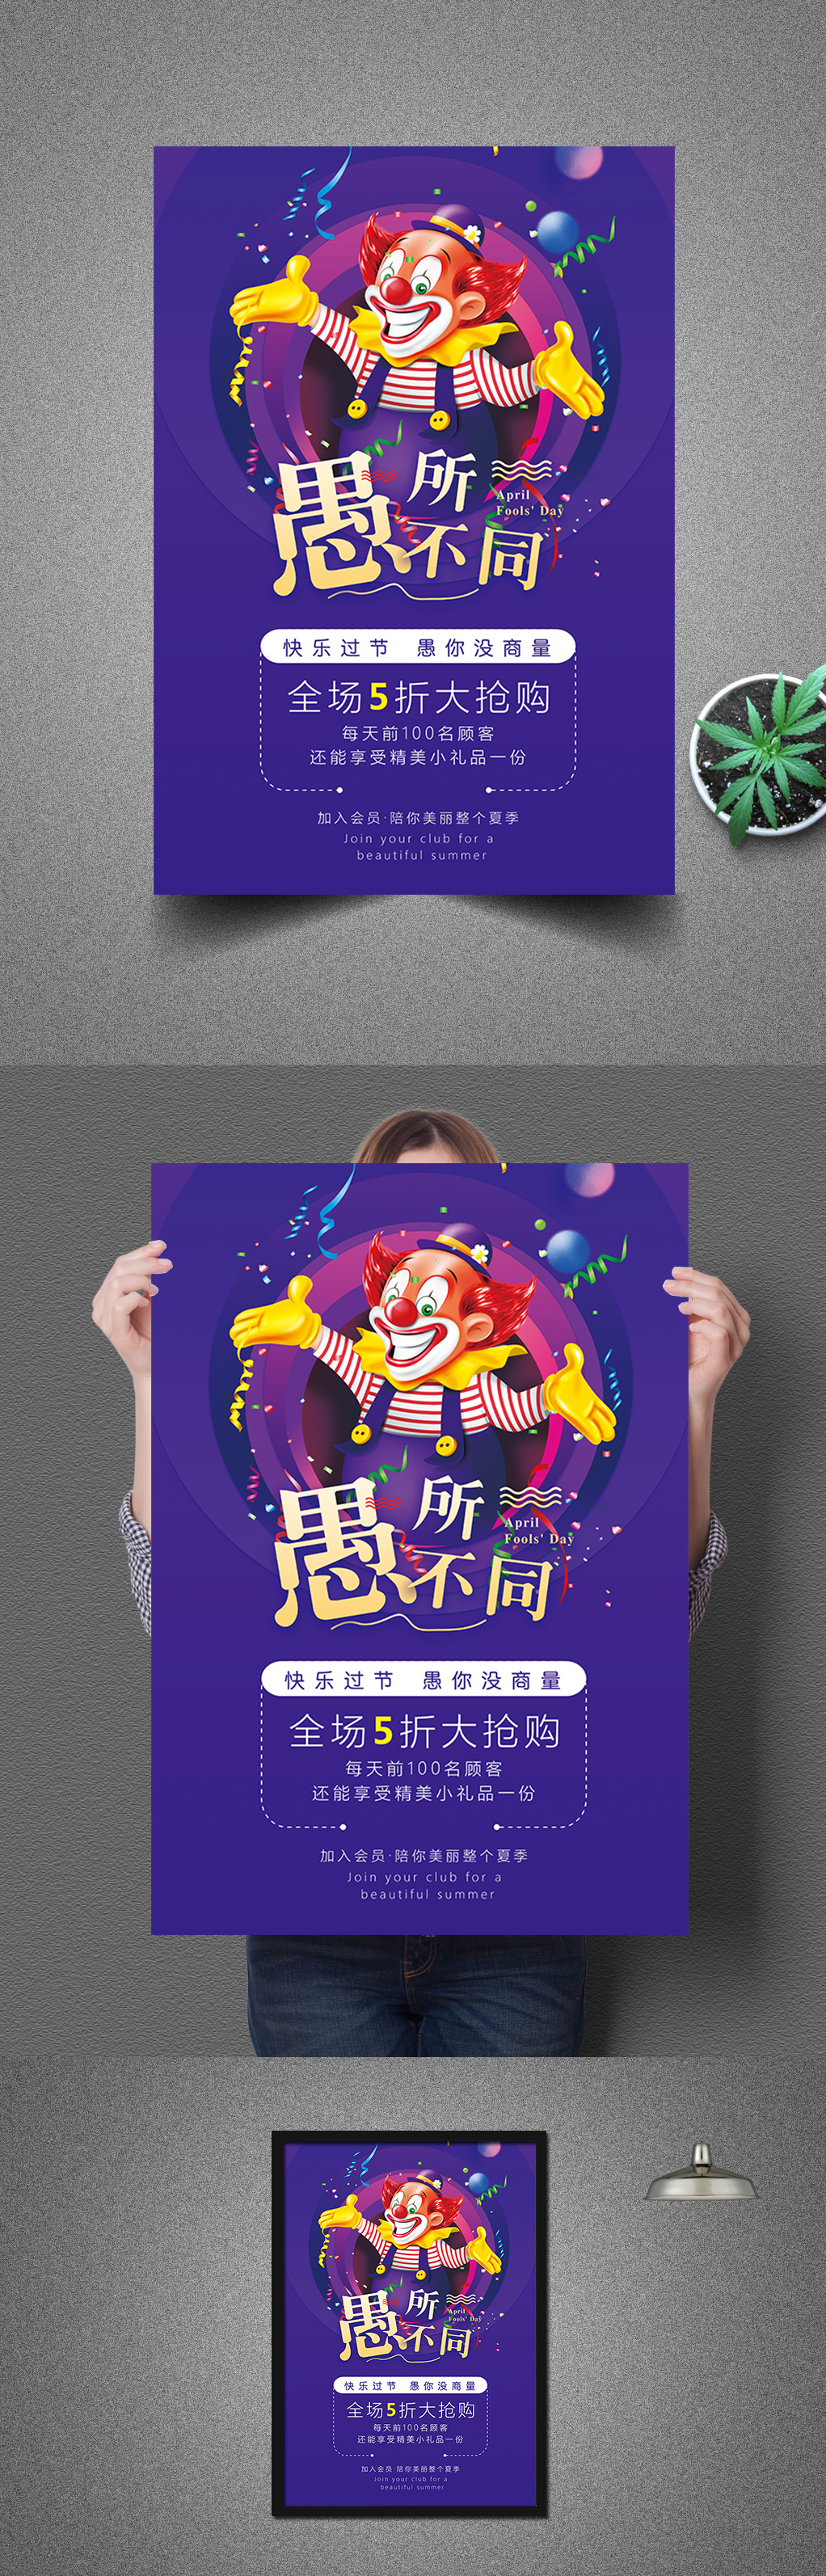 蓝紫风时尚创意愚人节促销宣传海报